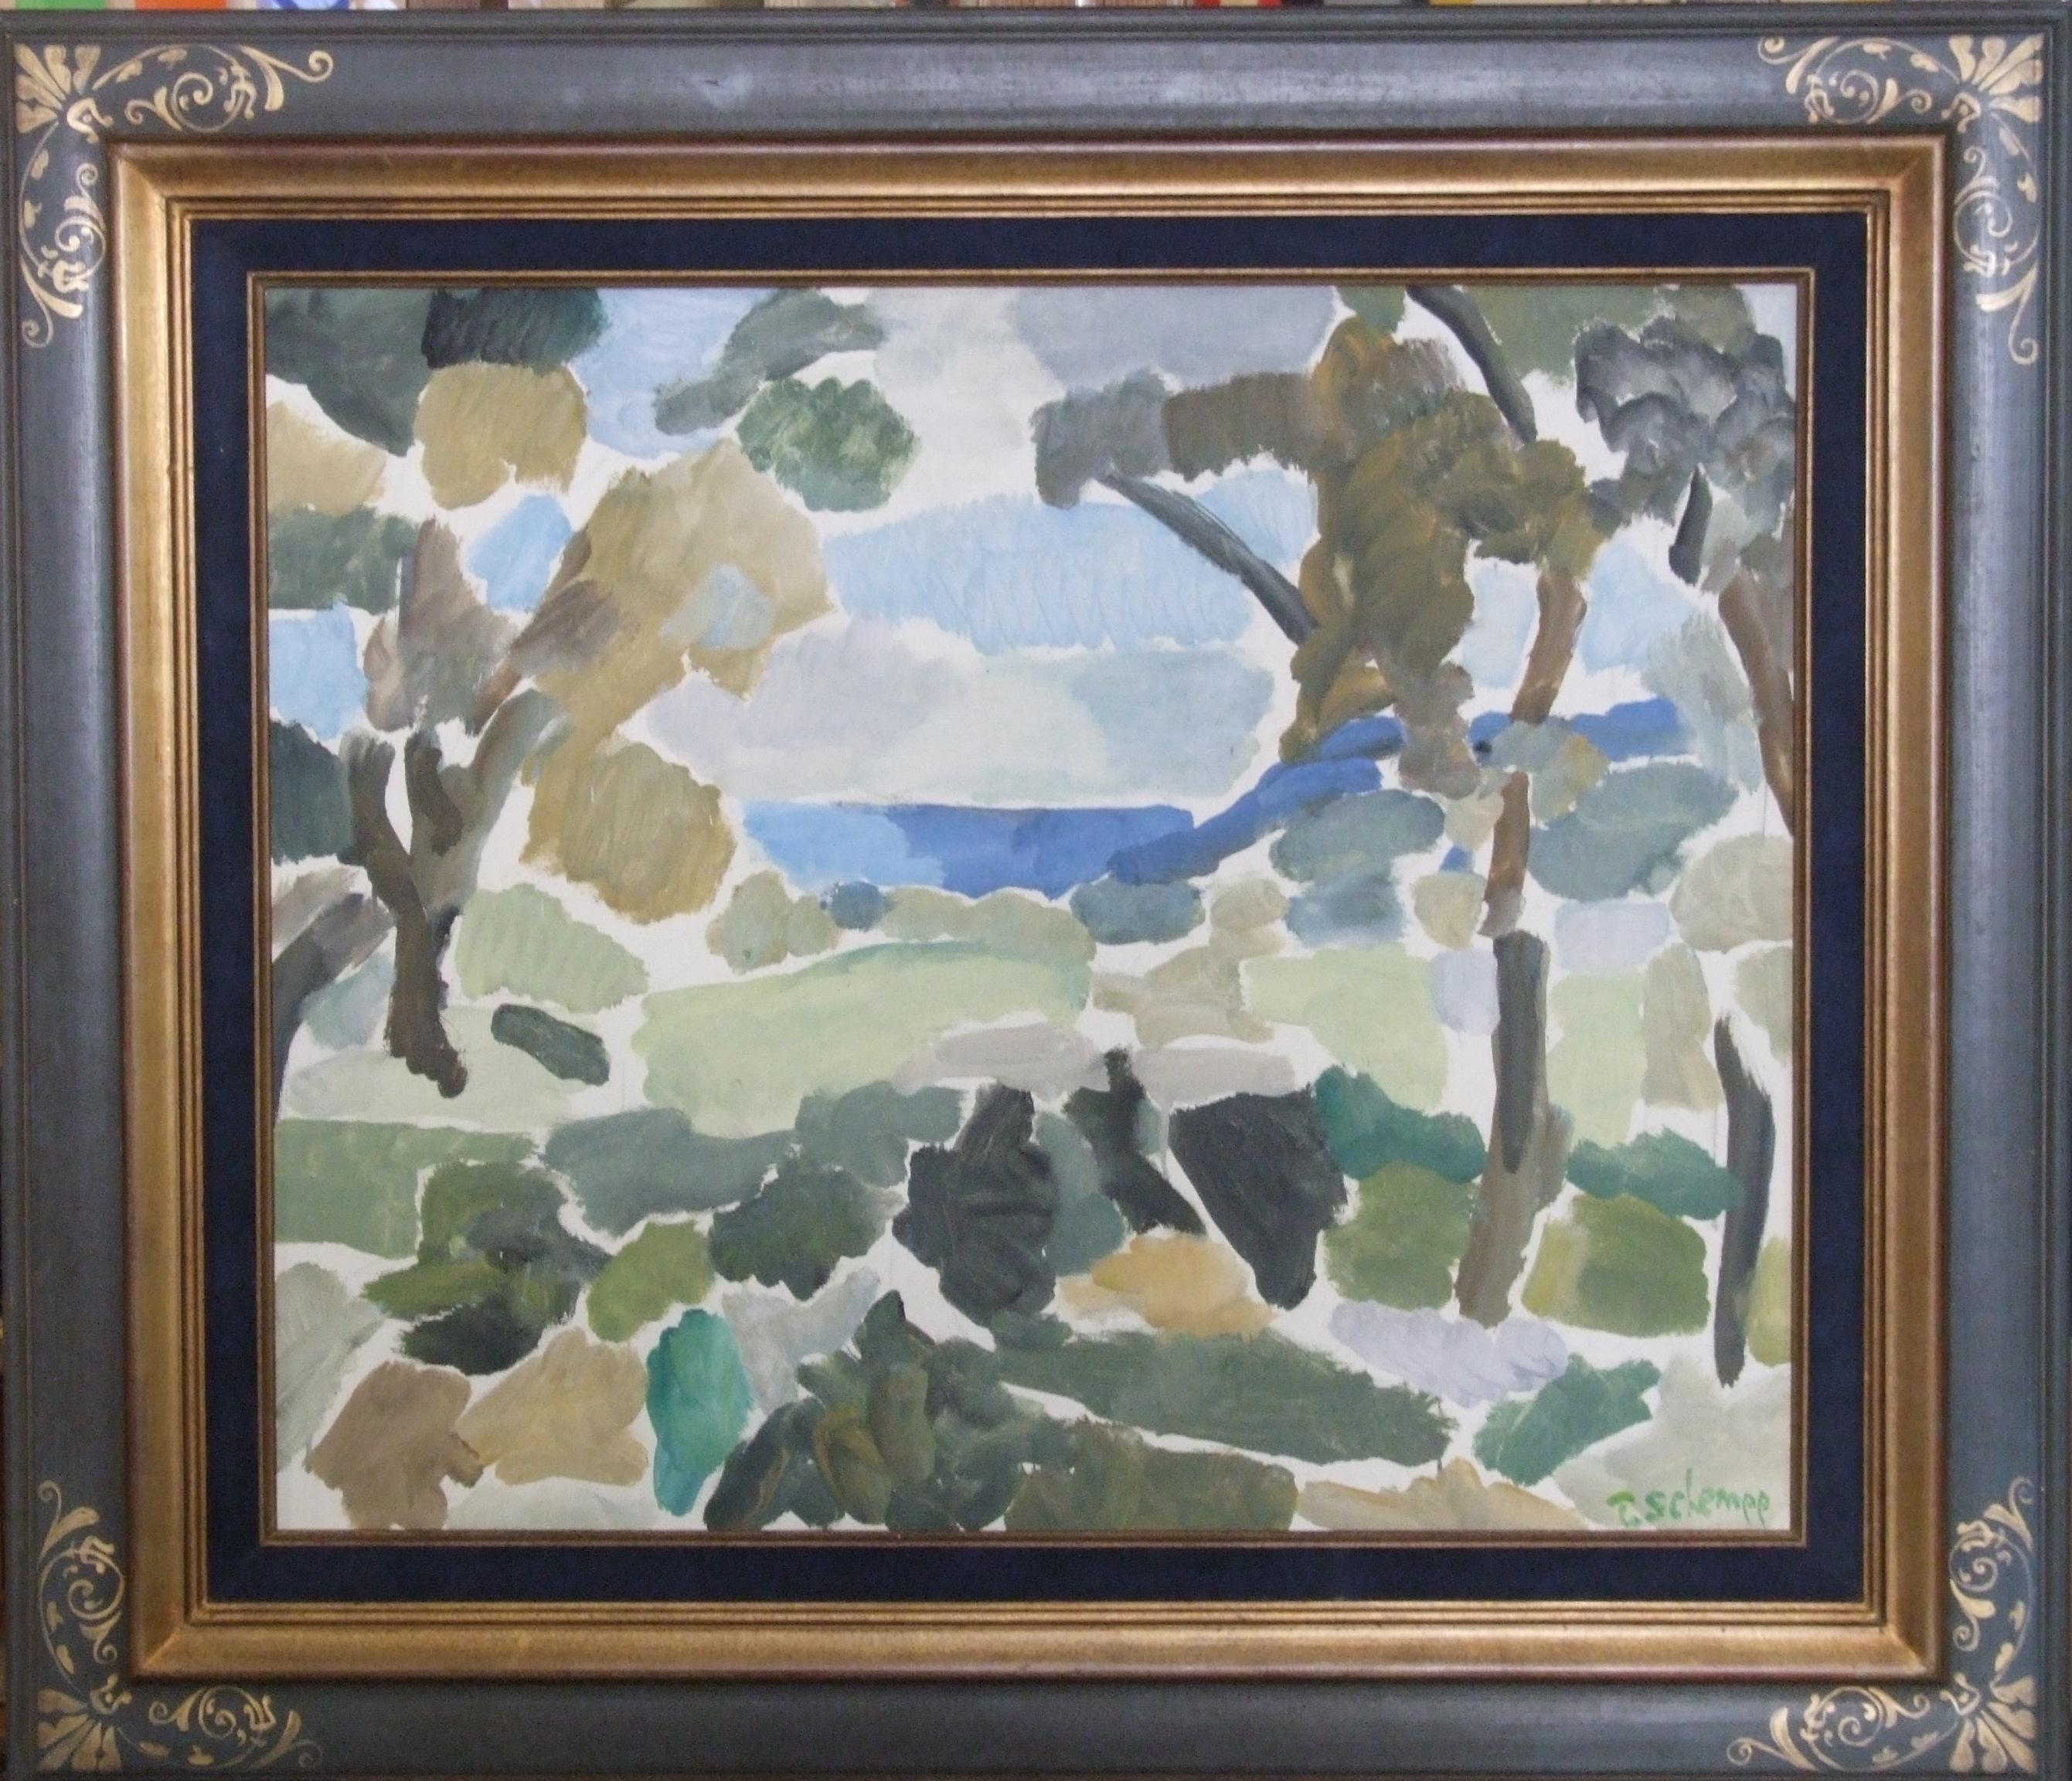 Paysage, 1960 - Huile sur toile, 60x73 cm., encadré - Painting by Theodore Schempp